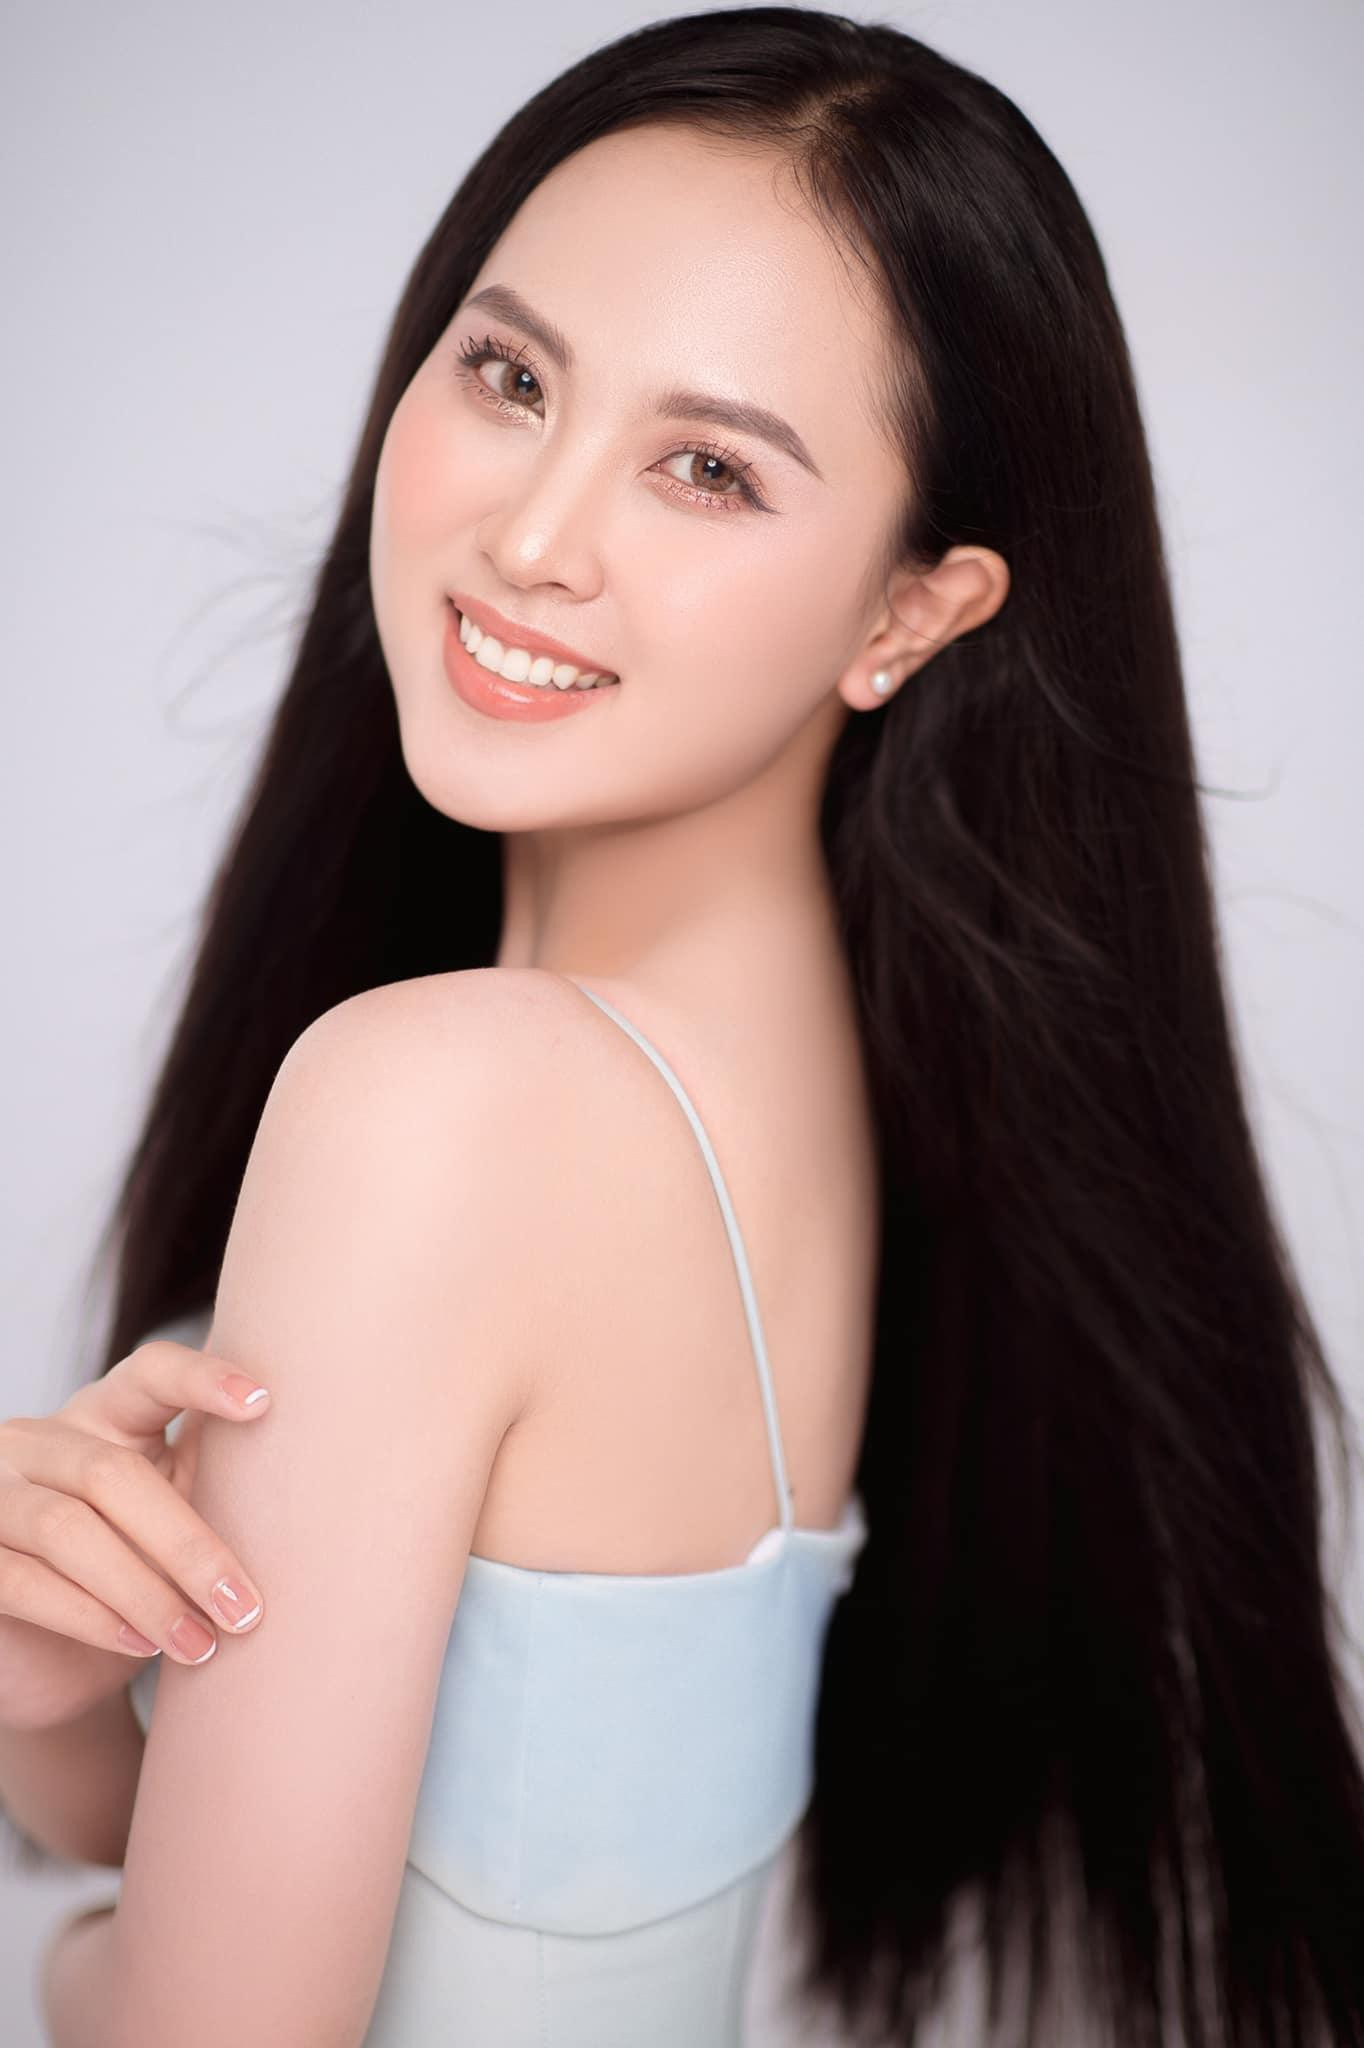 Nhan sắc ngọt ngào của người đẹp Nghệ An hai lần dự thi Hoa hậu Việt Nam ảnh 4